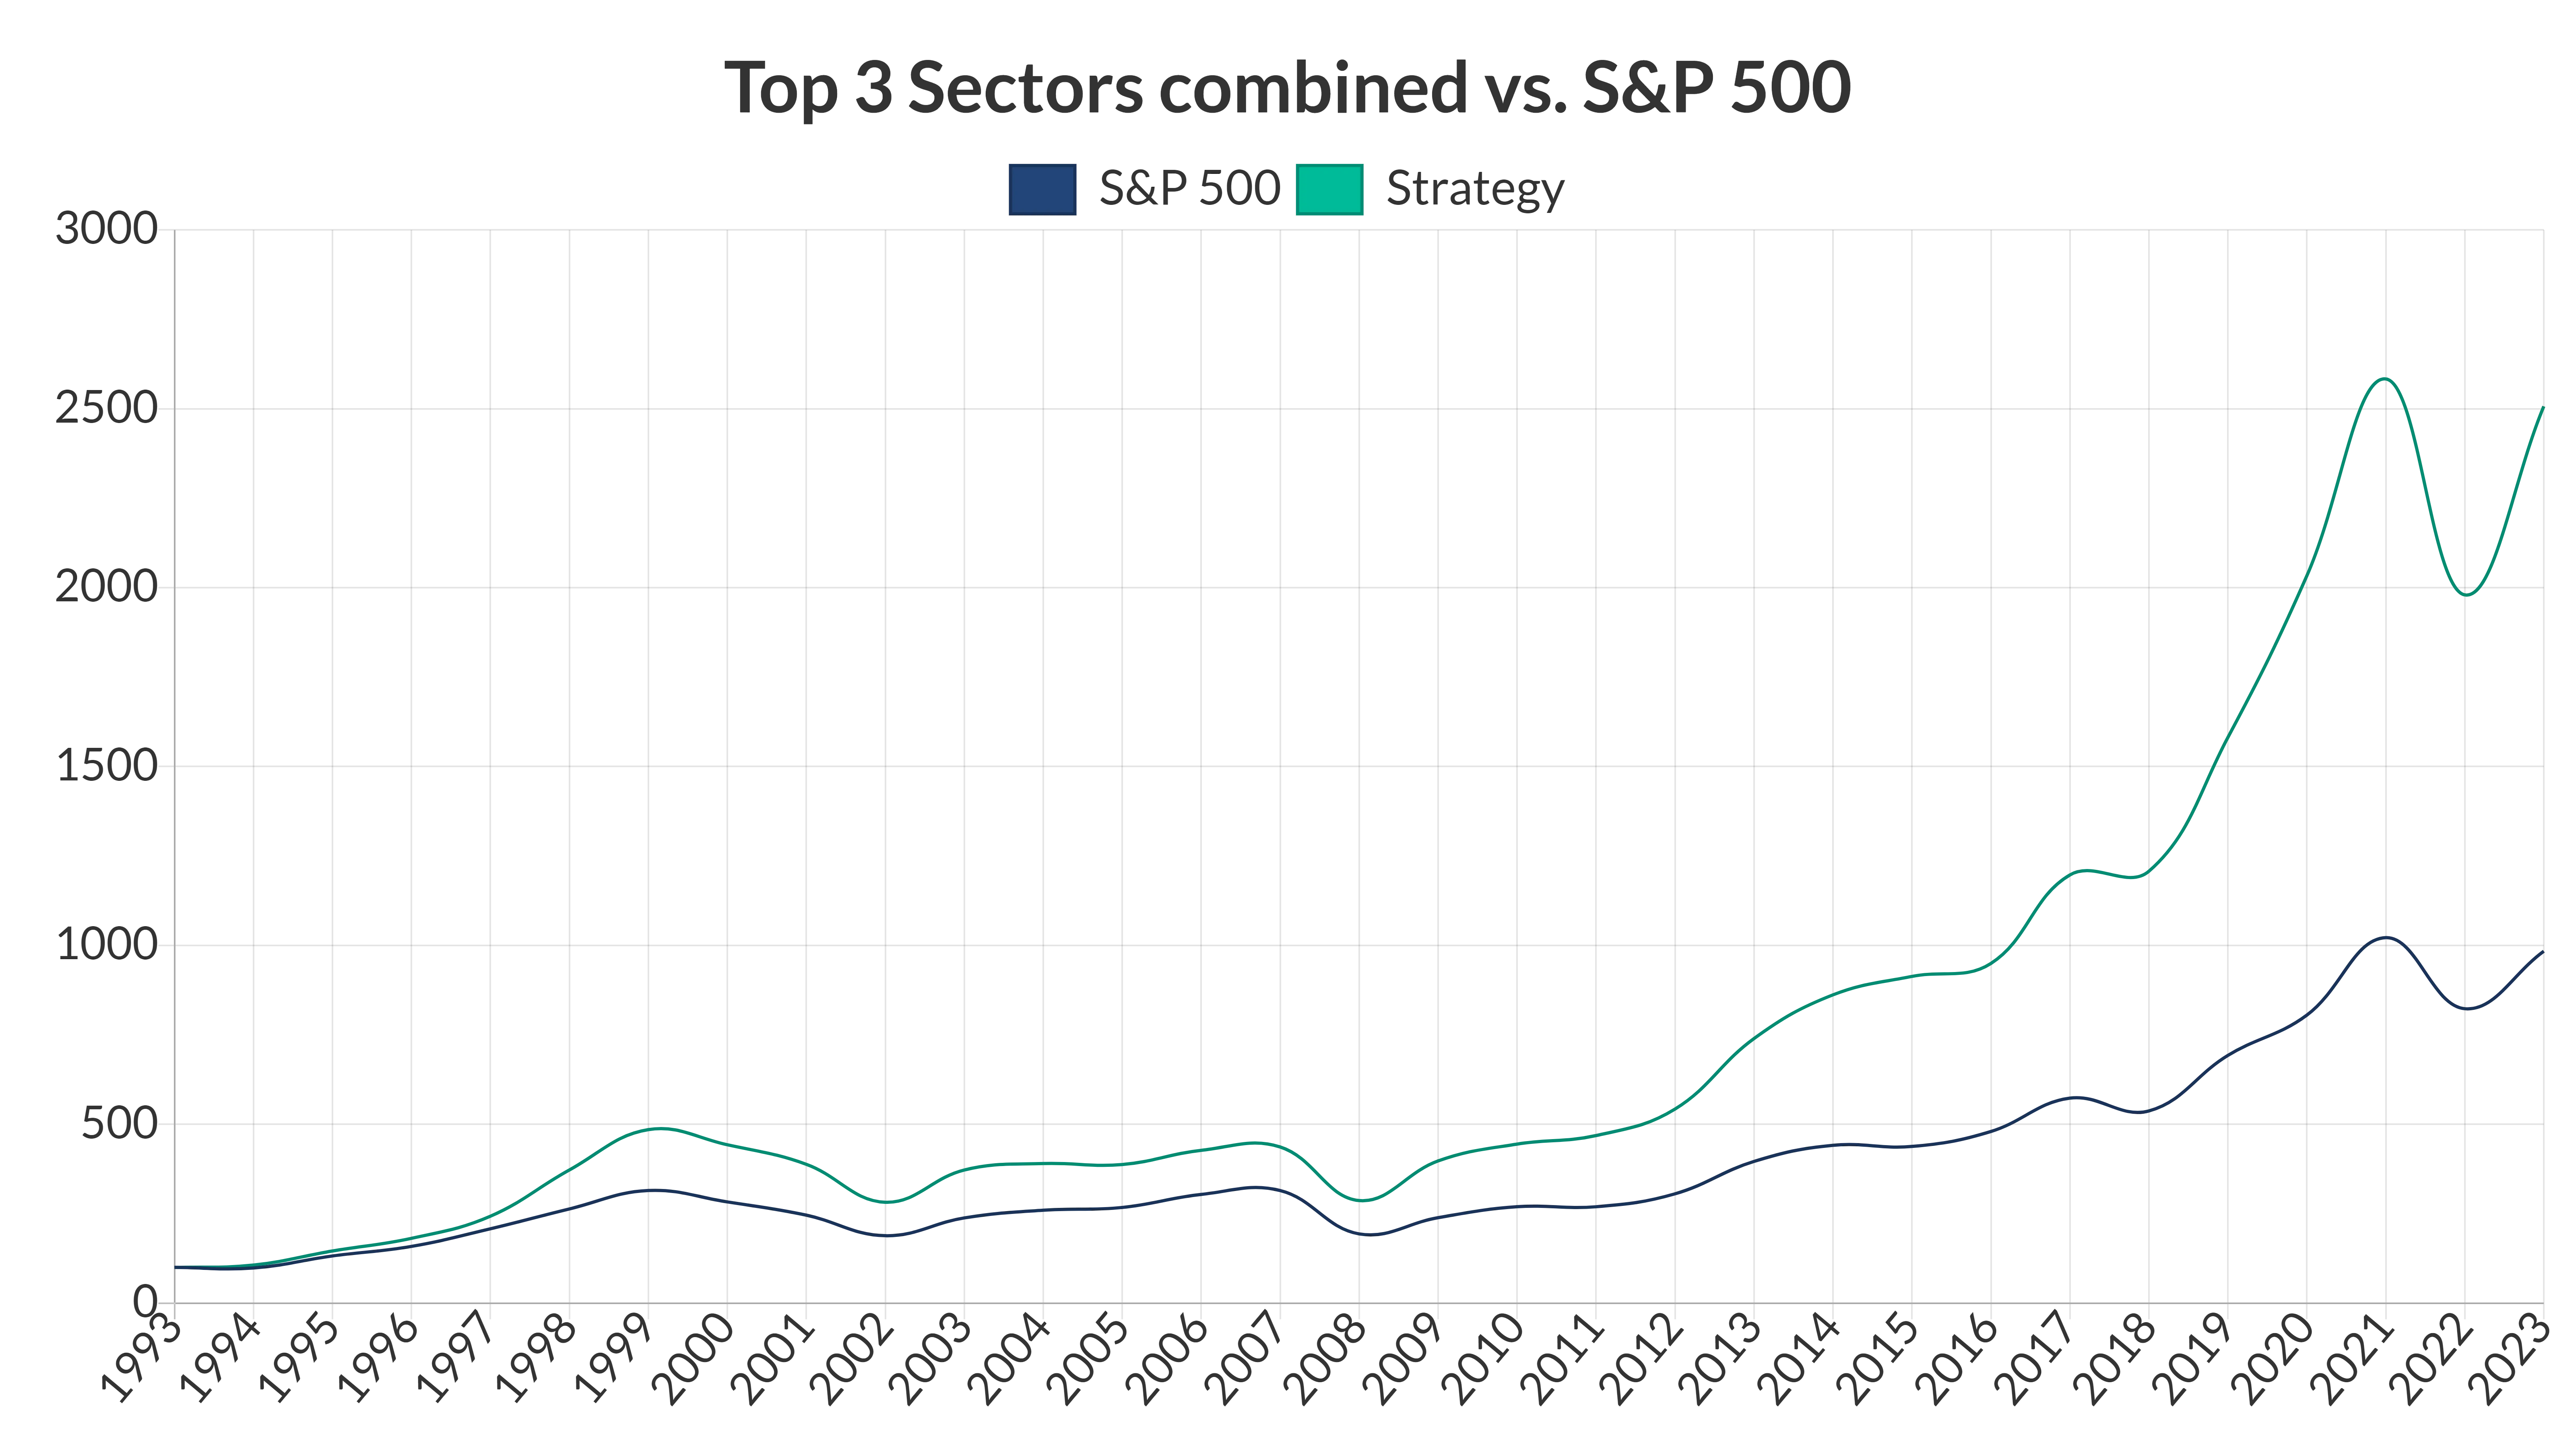 Top 3 sectors combined vs. S&P 500